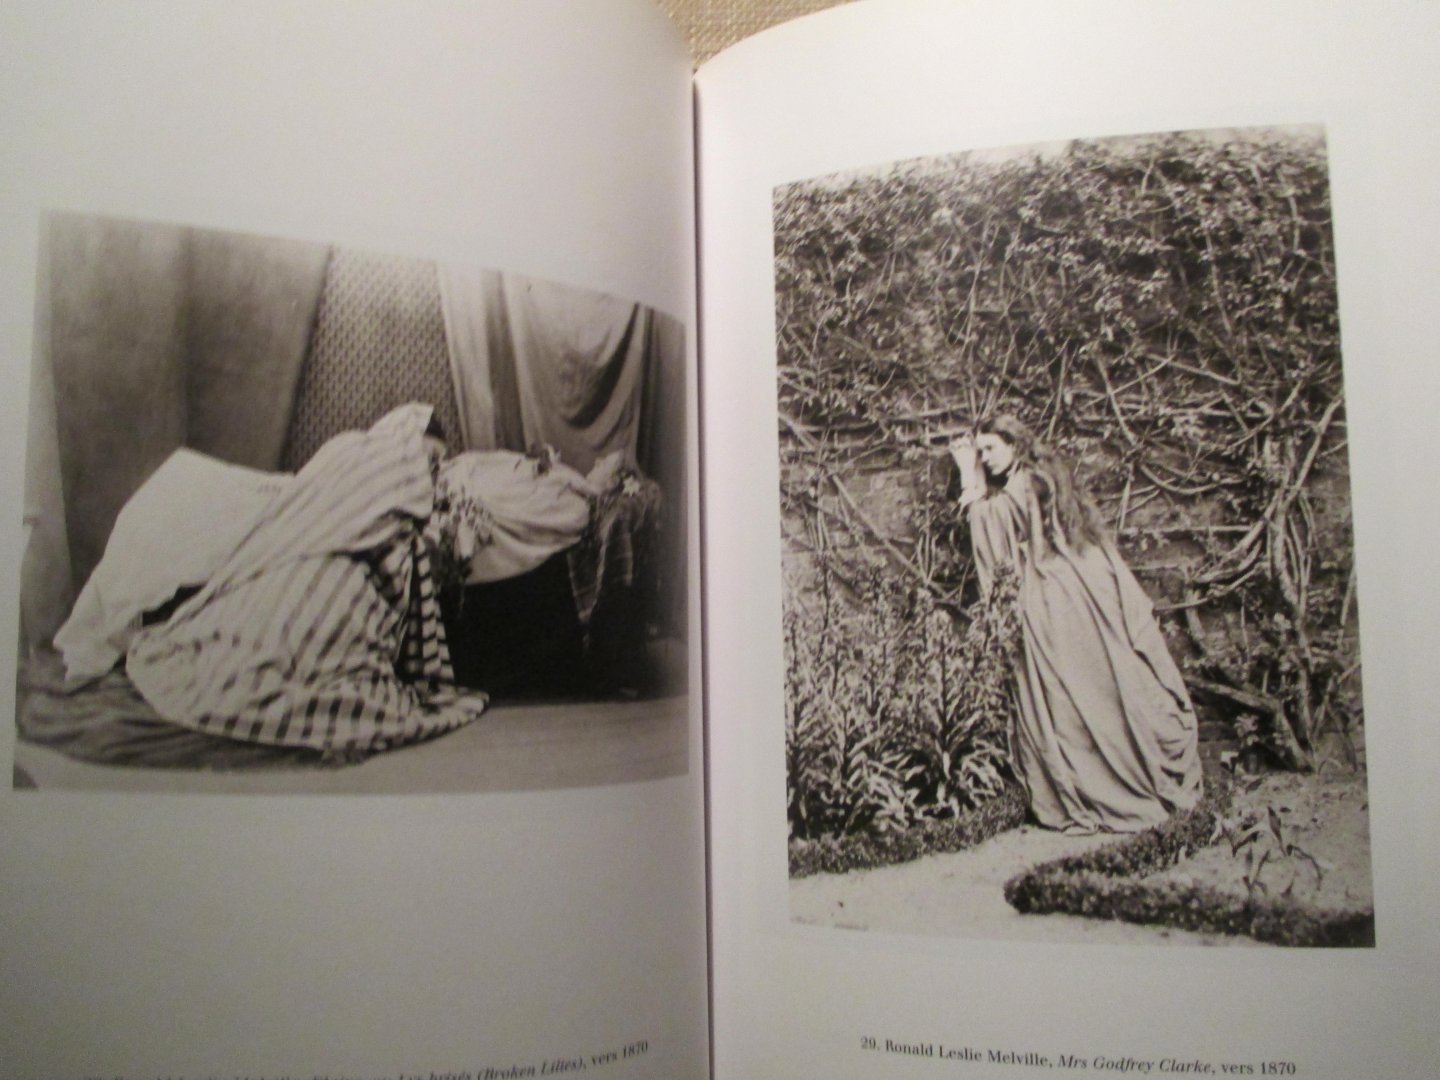 Bajac, Quentin - Tableaux vivants. Fantaisies photographiques victoriennes (1840-1880)